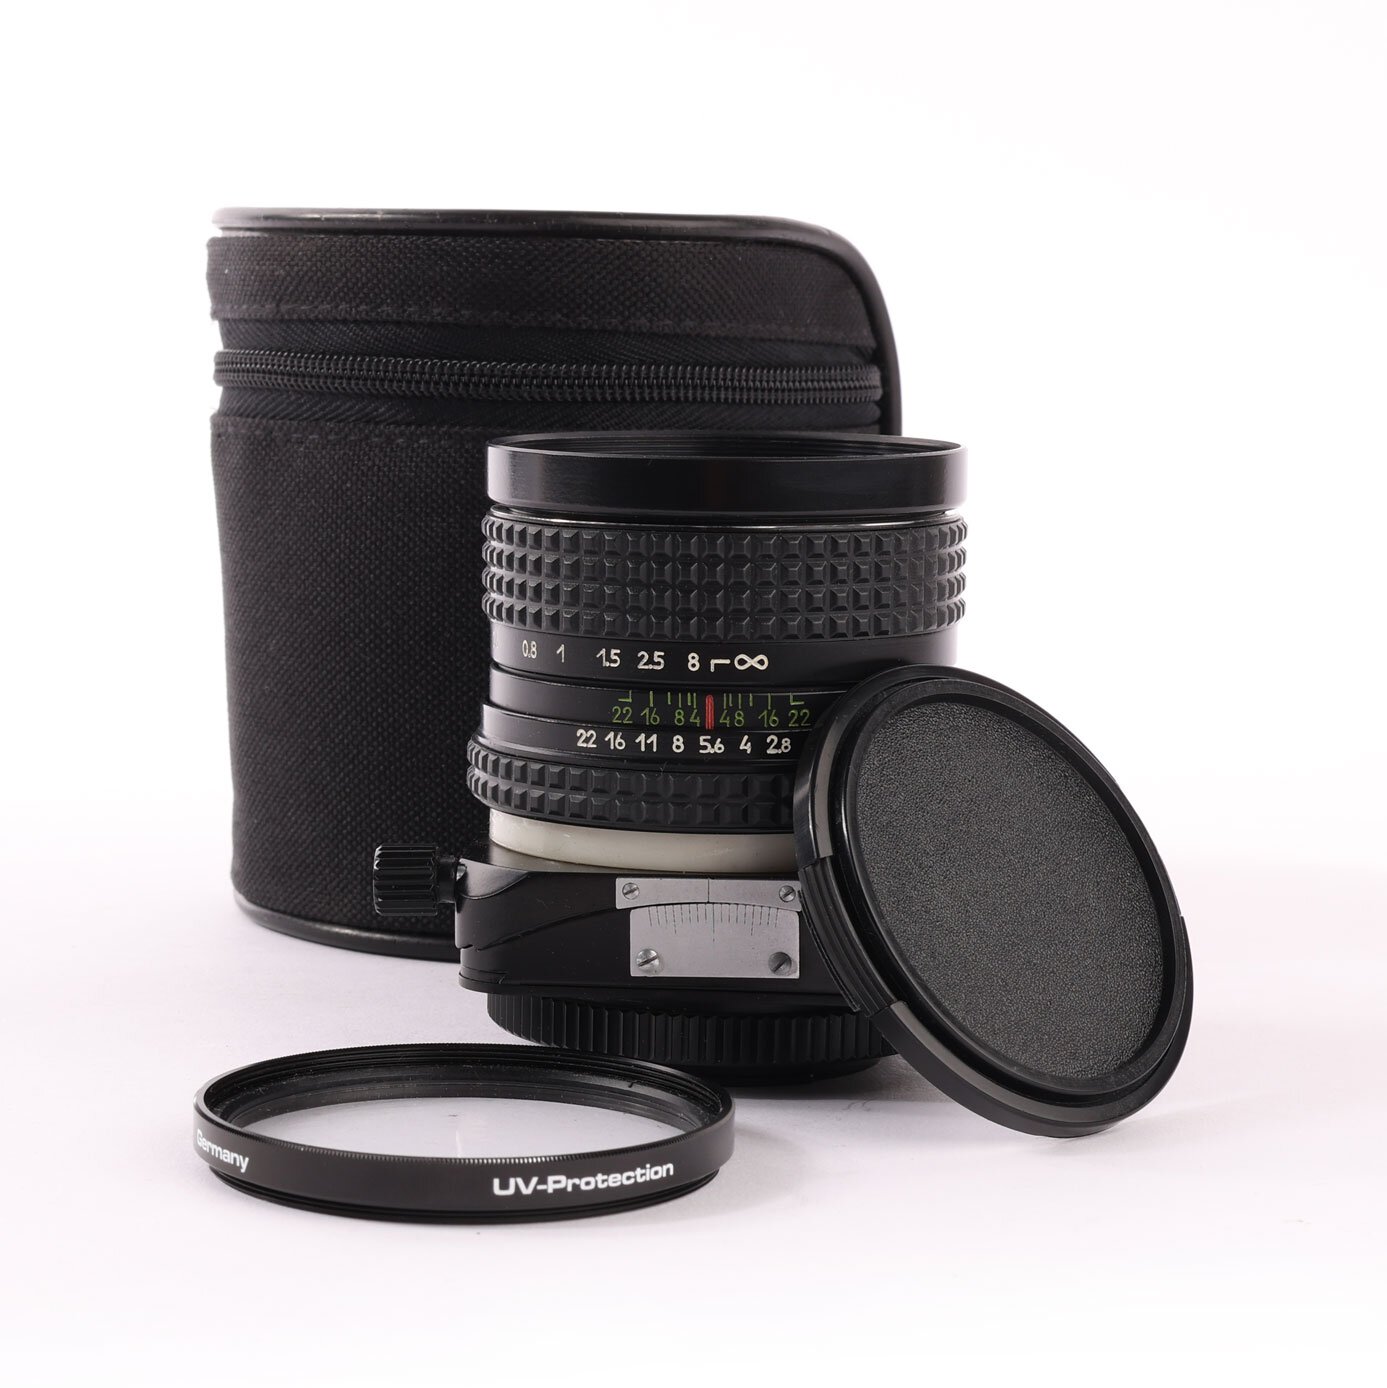 B.I.G. S&T Lens 2.8/35mm Canon FD